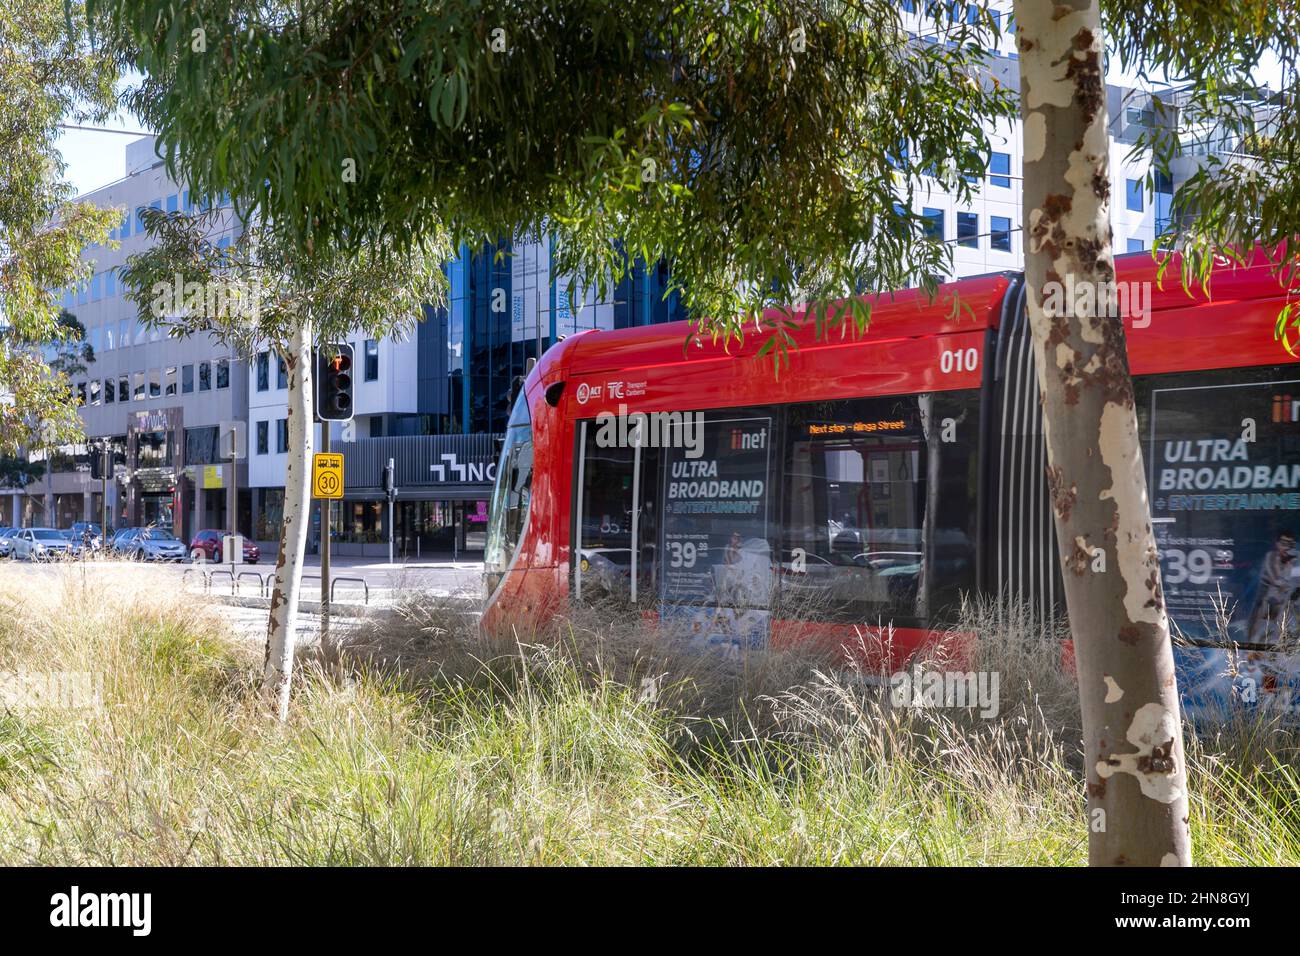 Canberra transport en commun léger dans le centre-ville, ACT, Australie Banque D'Images